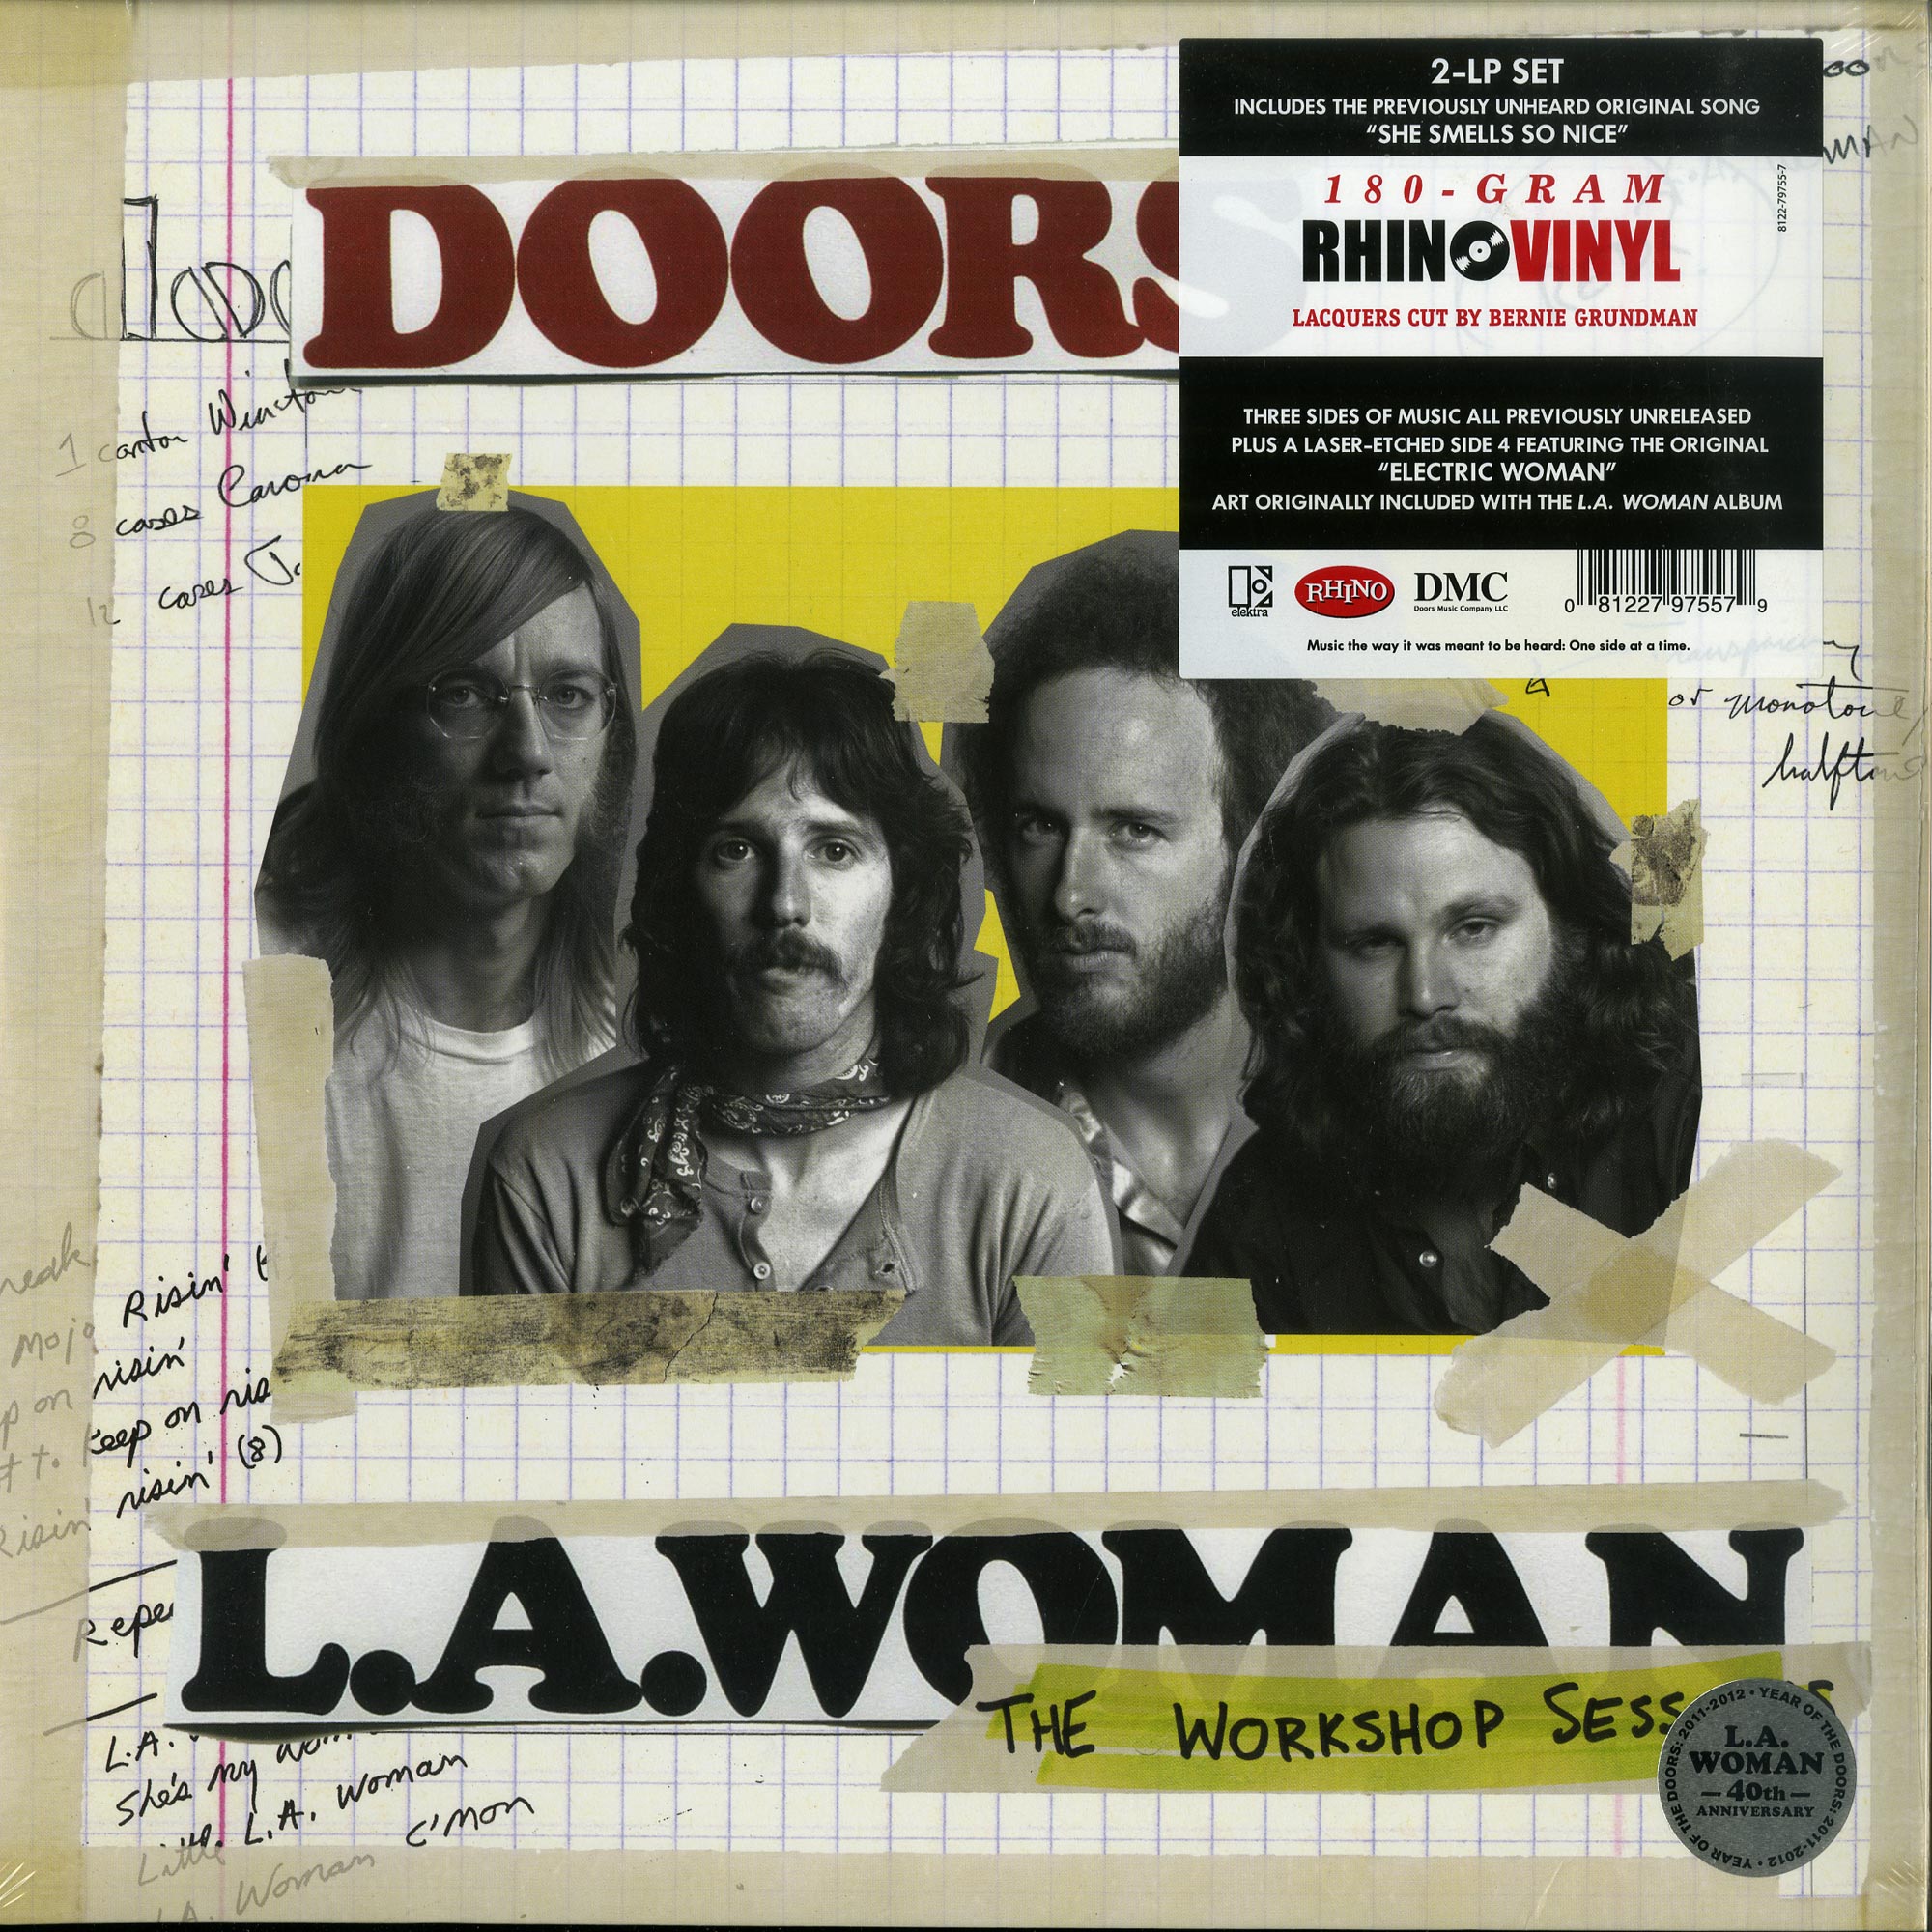  |  Vinyl LP | Doors - L.A. Woman Sessions (4 LPs) | Records on Vinyl